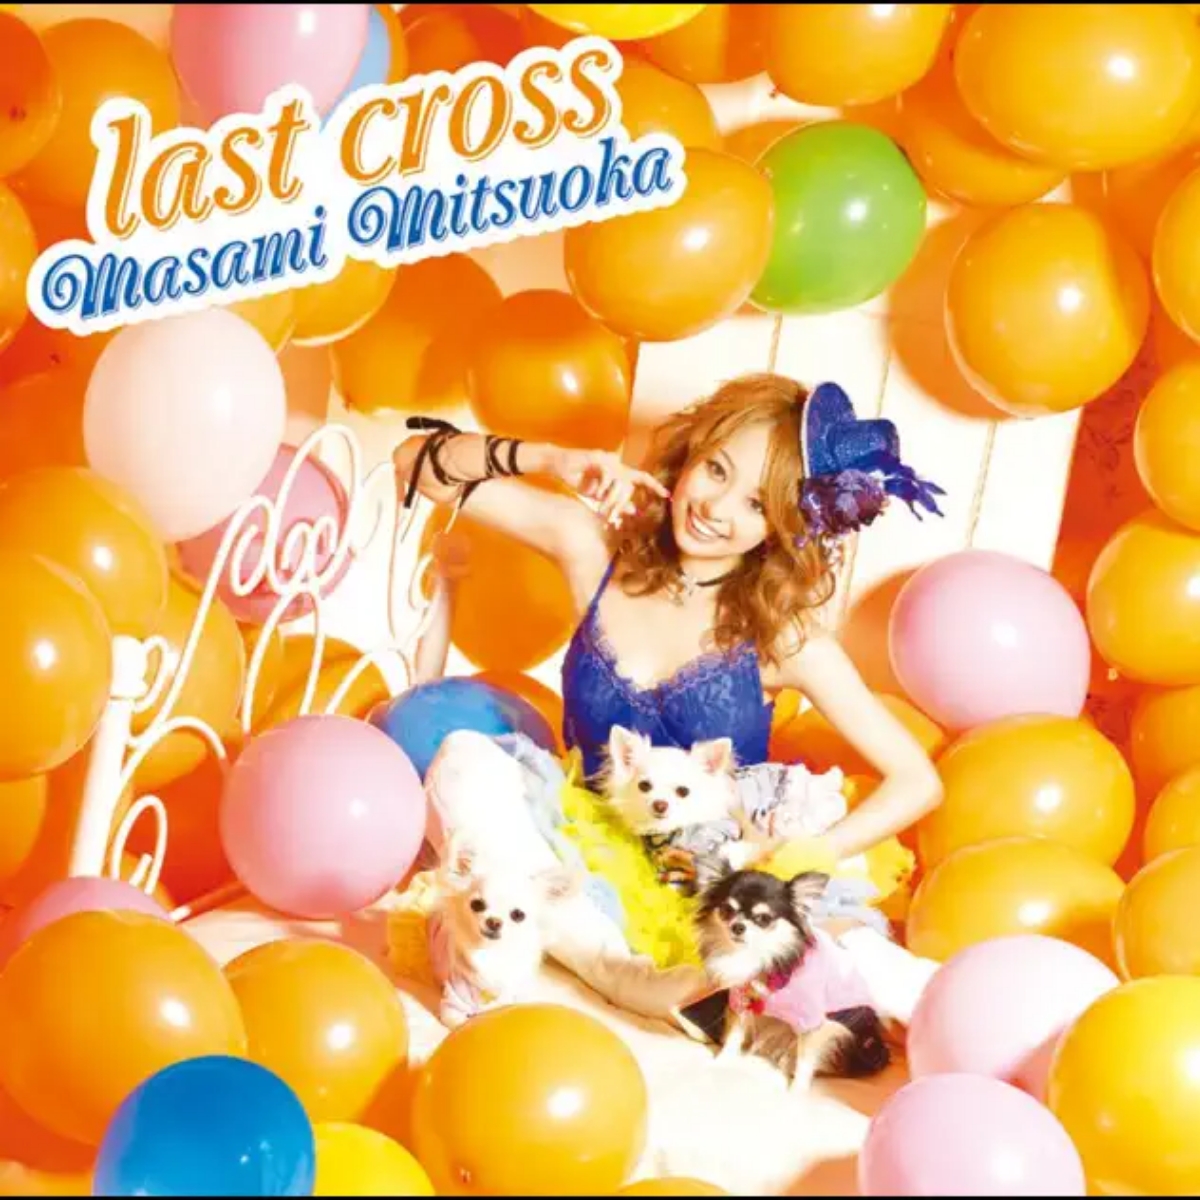 Masami Mitsuoka - Last Cross